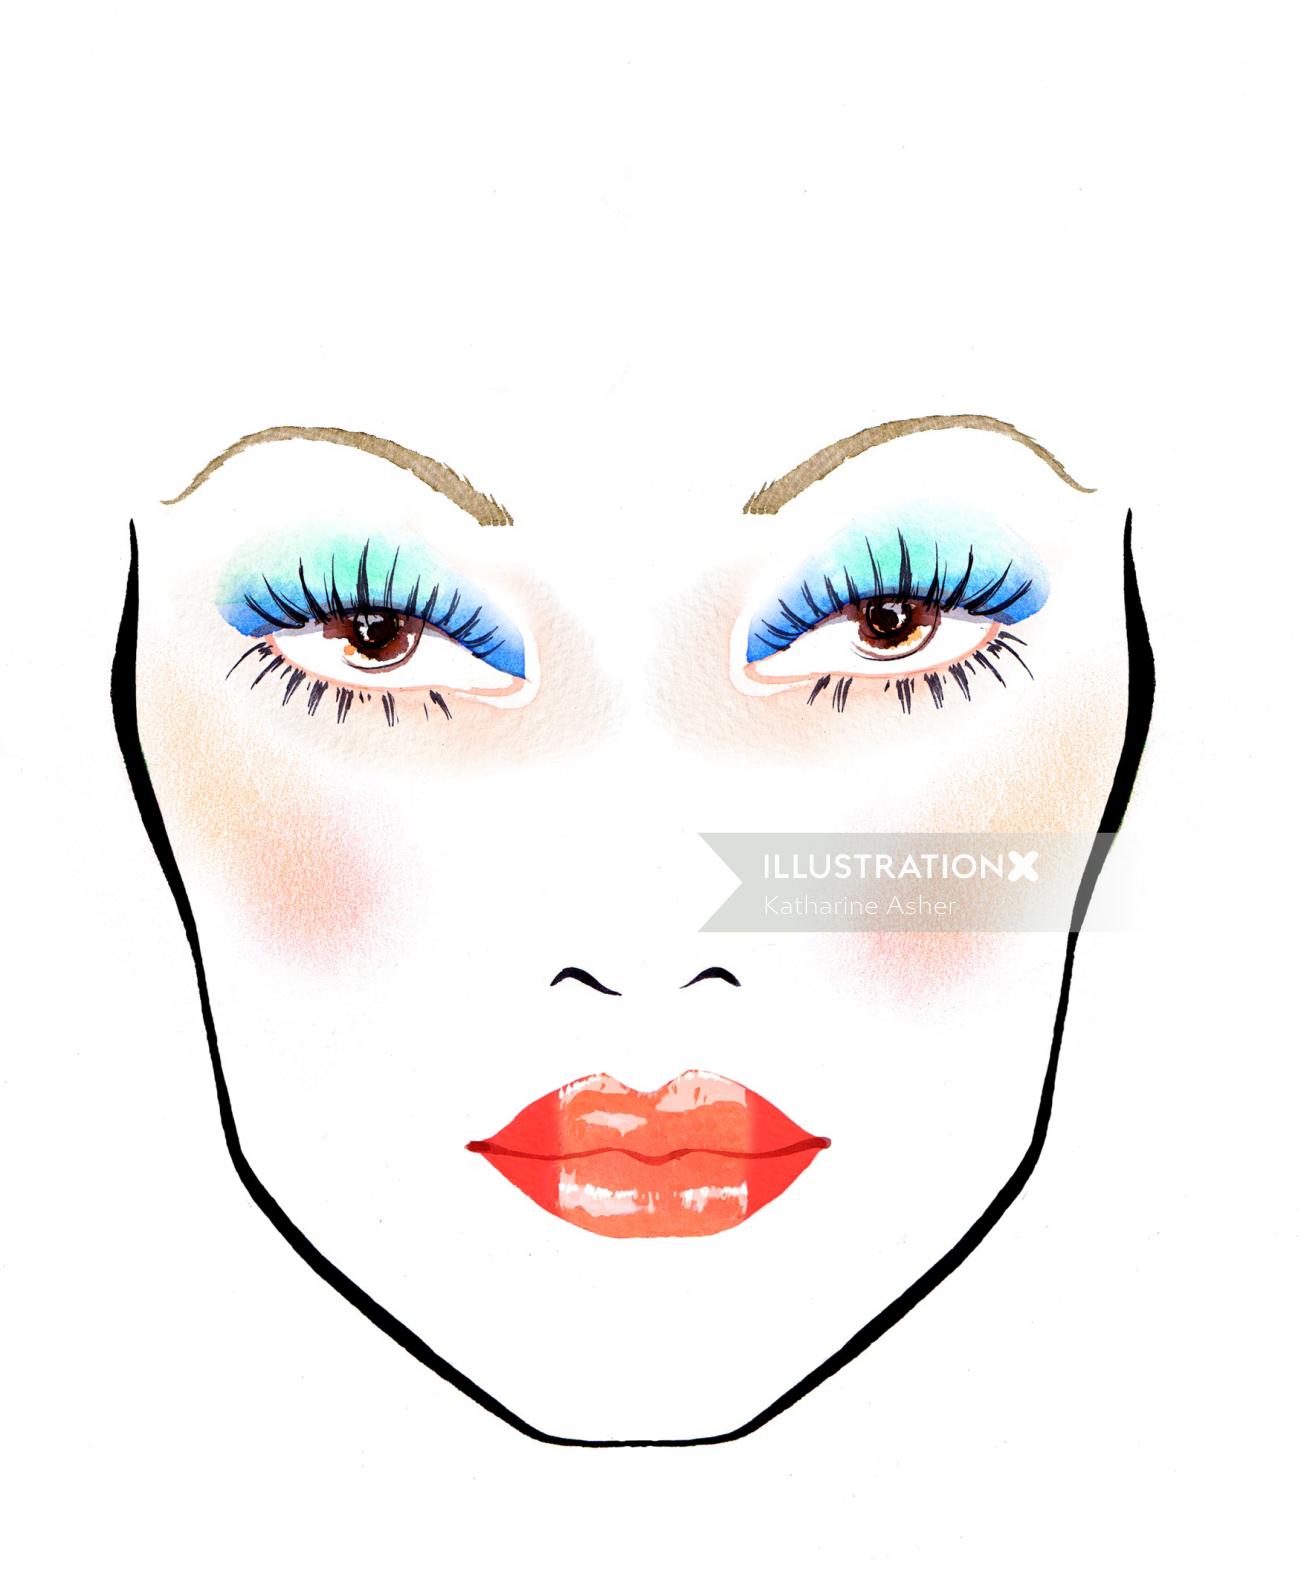 Ilustración de ojos azules y labios rojos de Katharine Asher